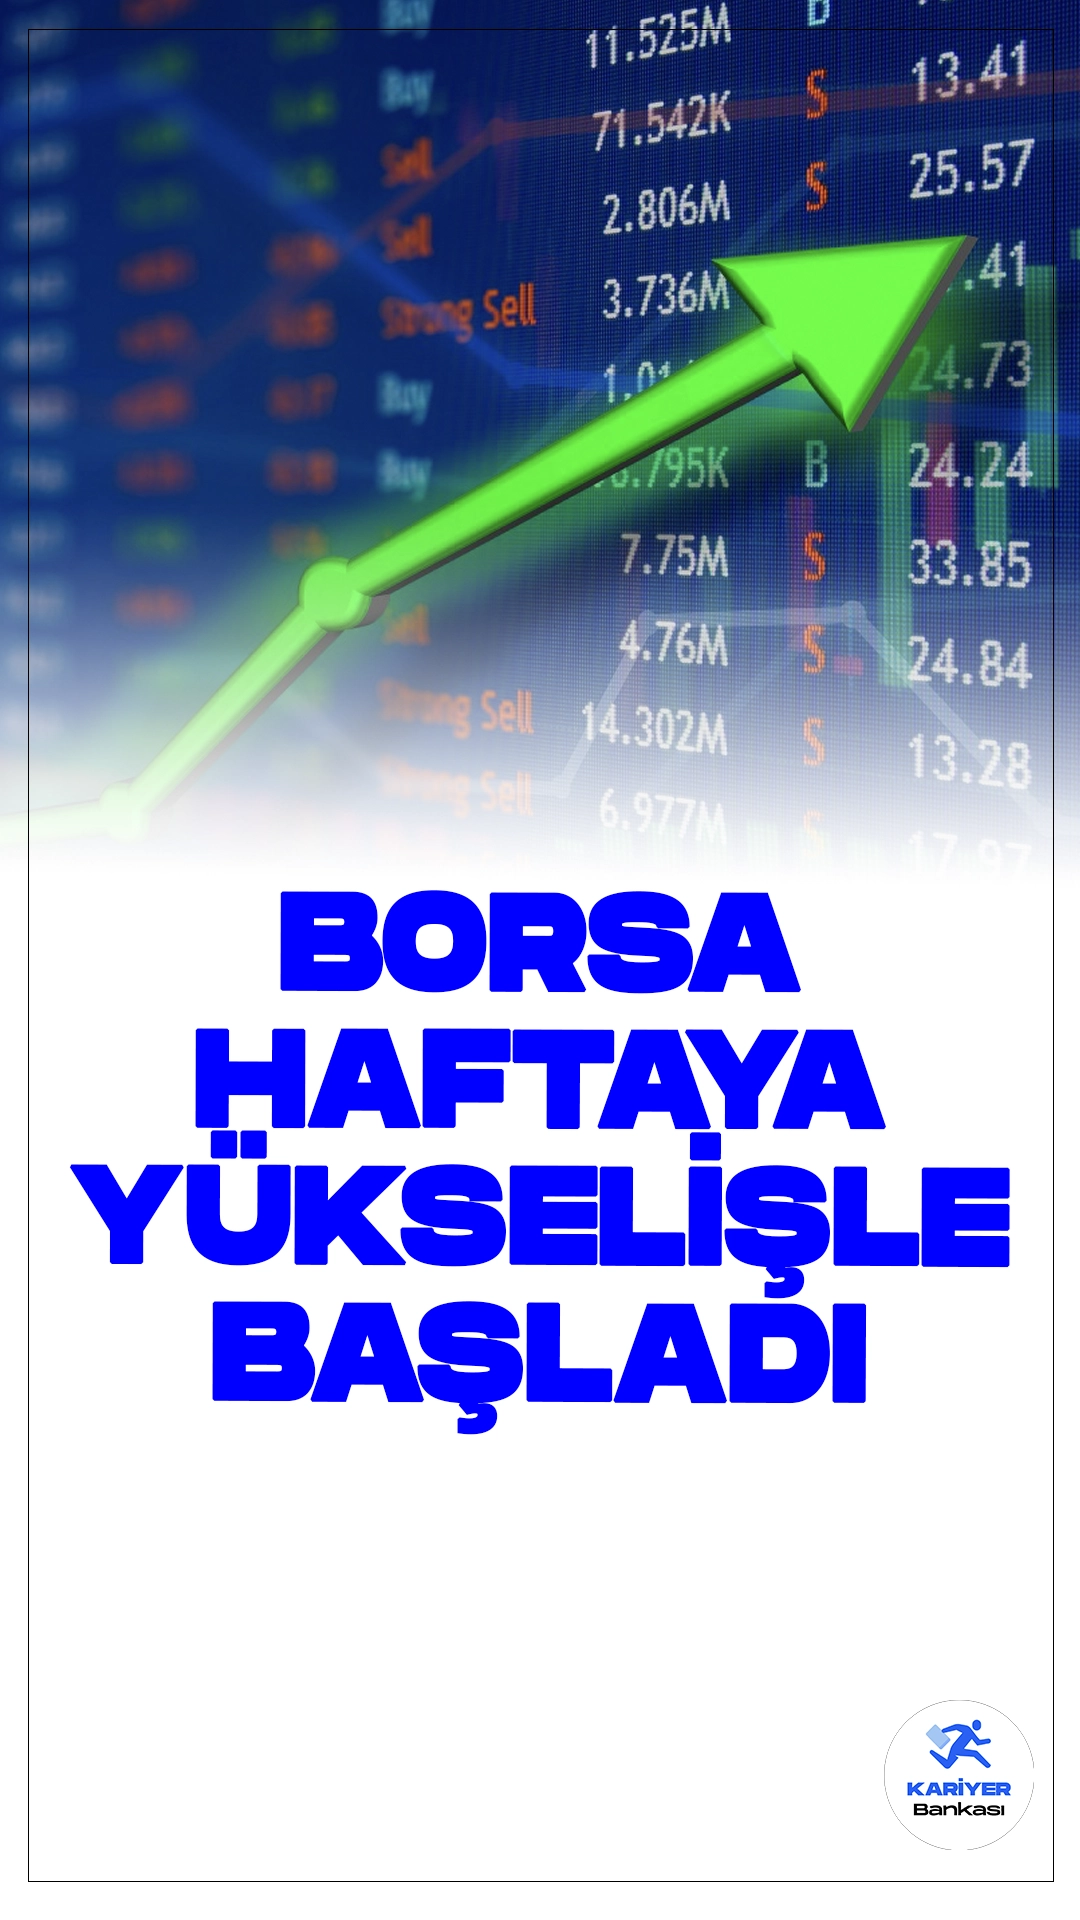 Borsa İstanbul Haftaya Yükselişle Başladı.Borsa İstanbul'da BIST 100 endeksi, haftaya yüzde 0,62 yükselişle 10.714,07 puandan başladı.